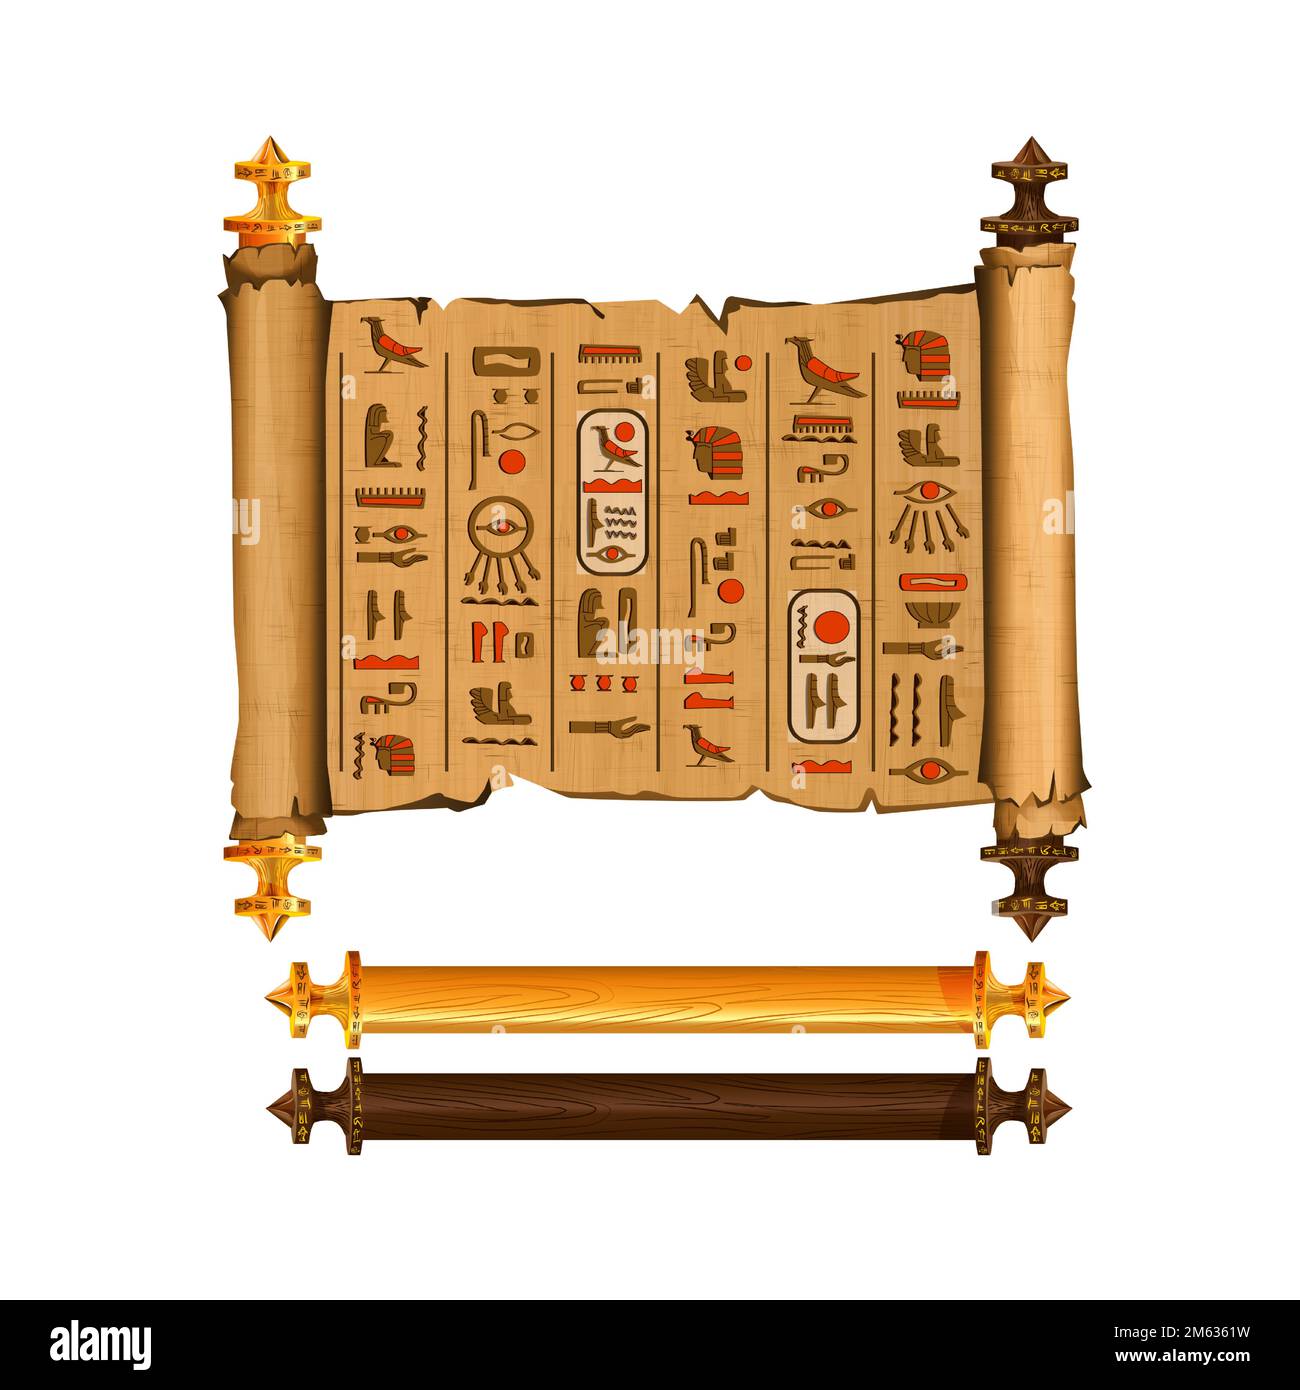 Alte ägyptische Papyrus-Scroll-Cartoon-Vektorsammlung mit Hieroglyphen und ägyptischer Kultur religiöse Symbole, antike Götter und heiliger Vogel, isoliertes Manuskript mit dunklen und hellen Holzelementen. Stock Vektor